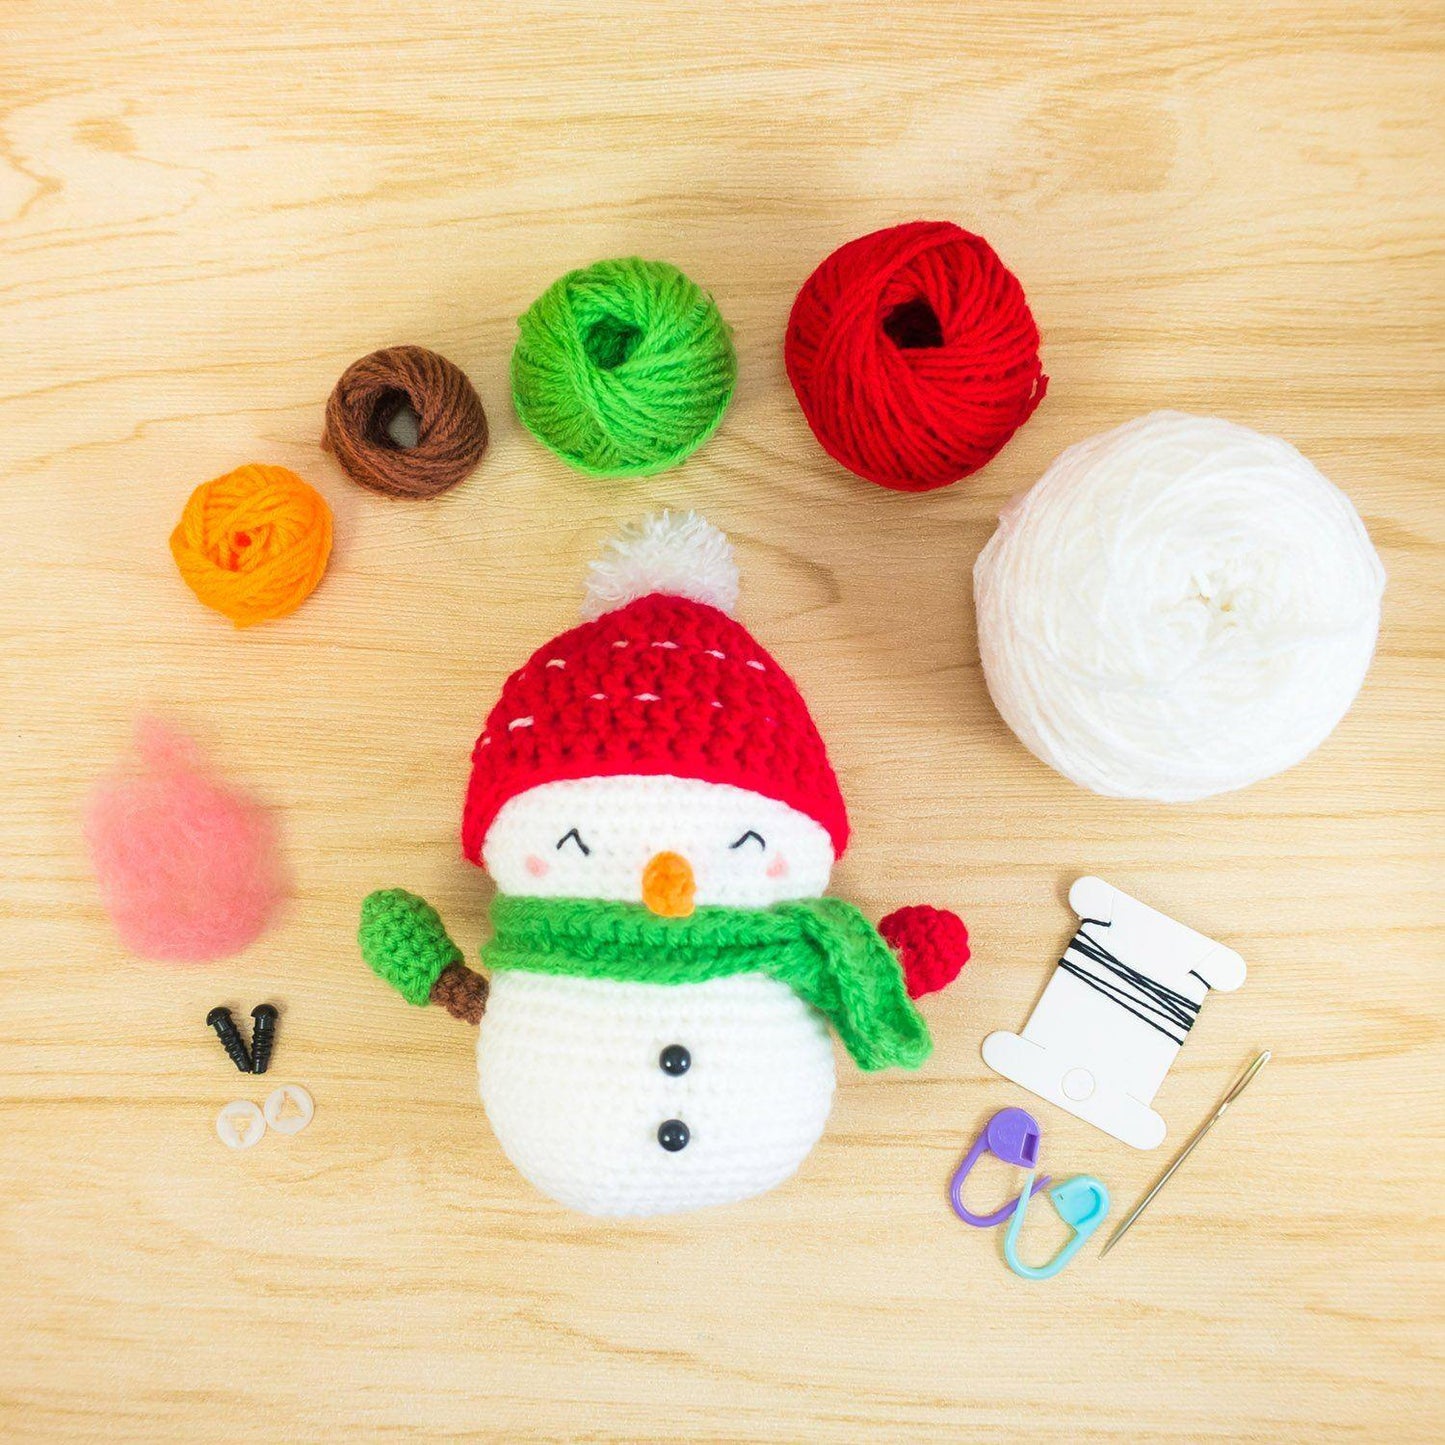 Jolly the Snowman Amigurumi Kit For Christmas